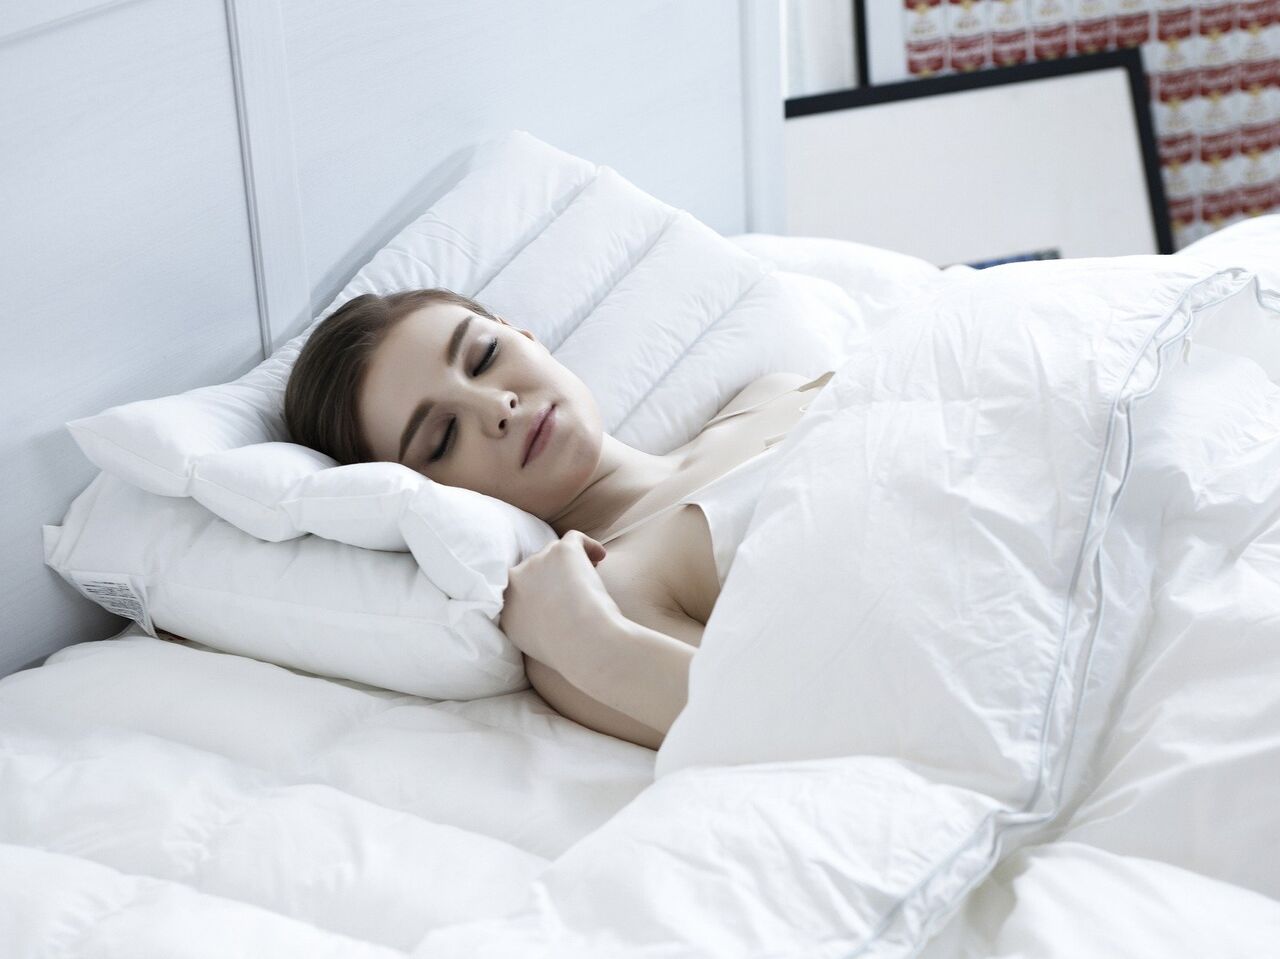 Гинеколог объяснила, почему женщинам лучше спать без трусов